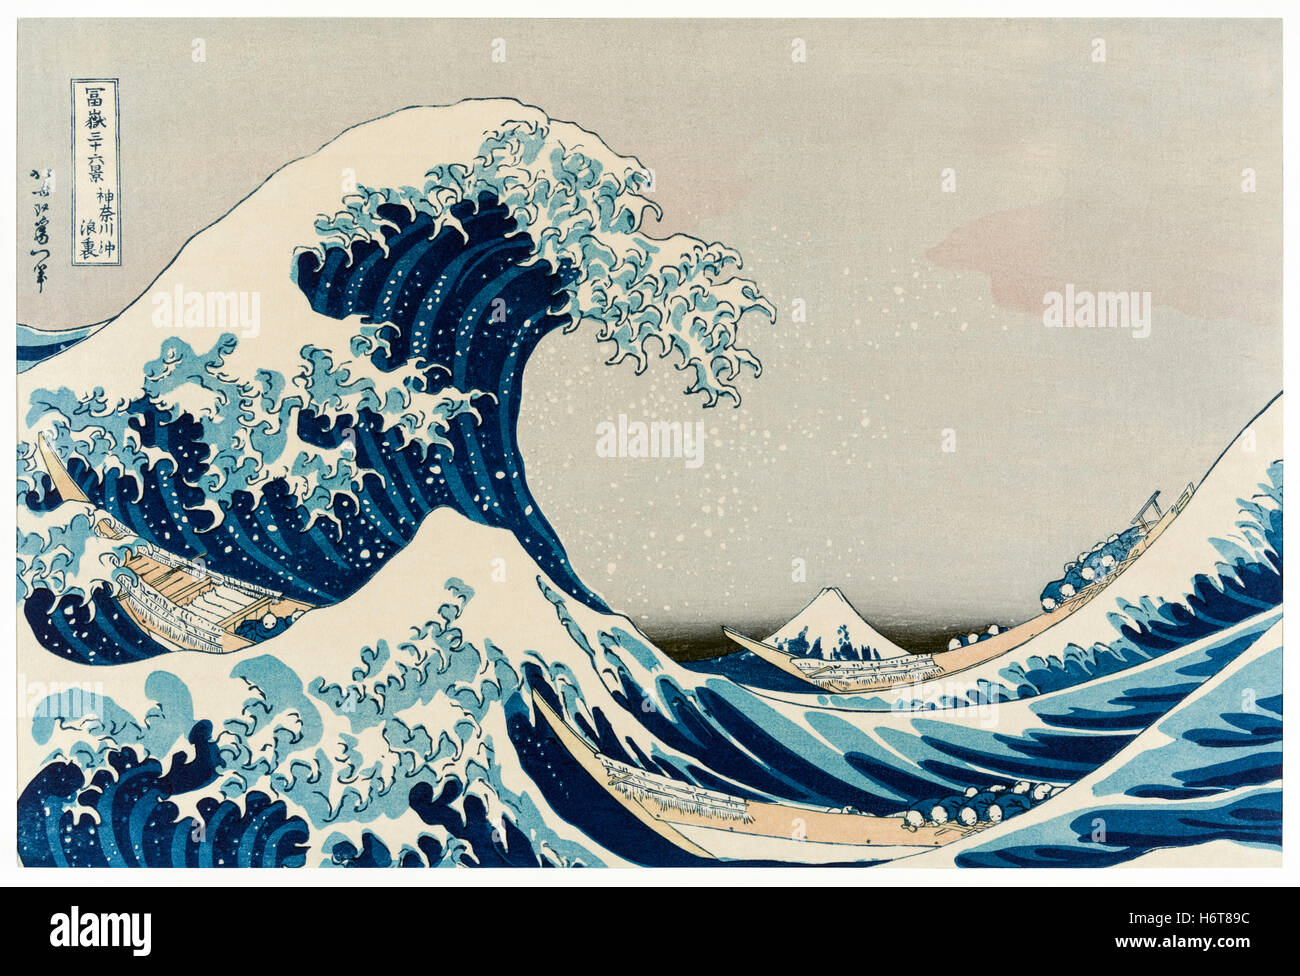 La gran ola de kanagawa fotografías e imágenes de alta resolución - Alamy